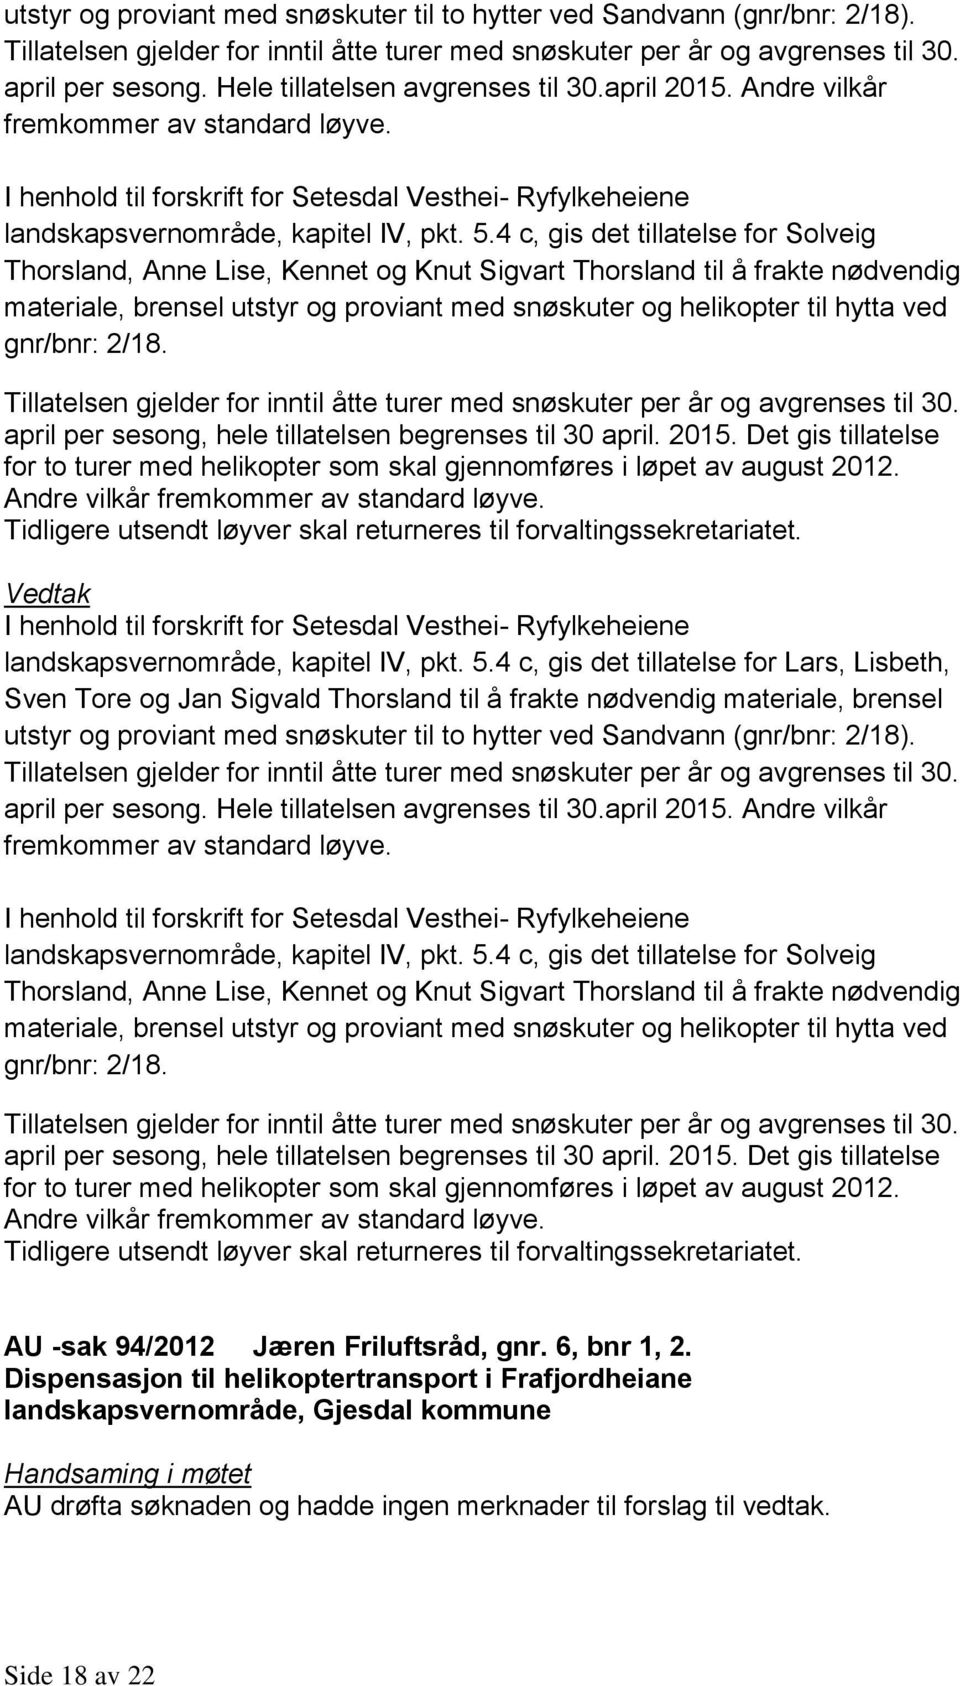 4 c, gis det tillatelse for Solveig Thorsland, Anne Lise, Kennet og Knut Sigvart Thorsland til å frakte nødvendig materiale, brensel utstyr og proviant med snøskuter og helikopter til hytta ved